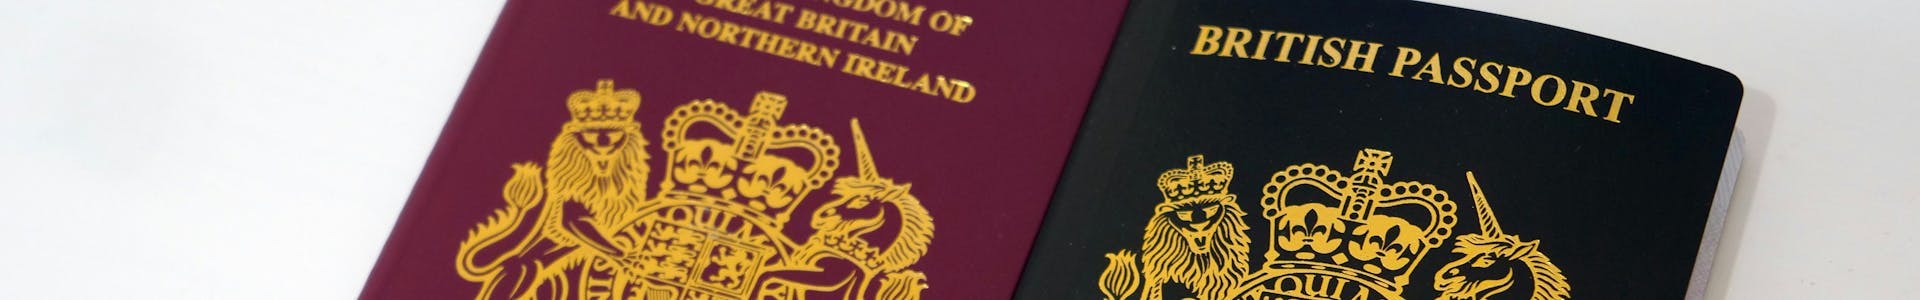 UK passport -Good character